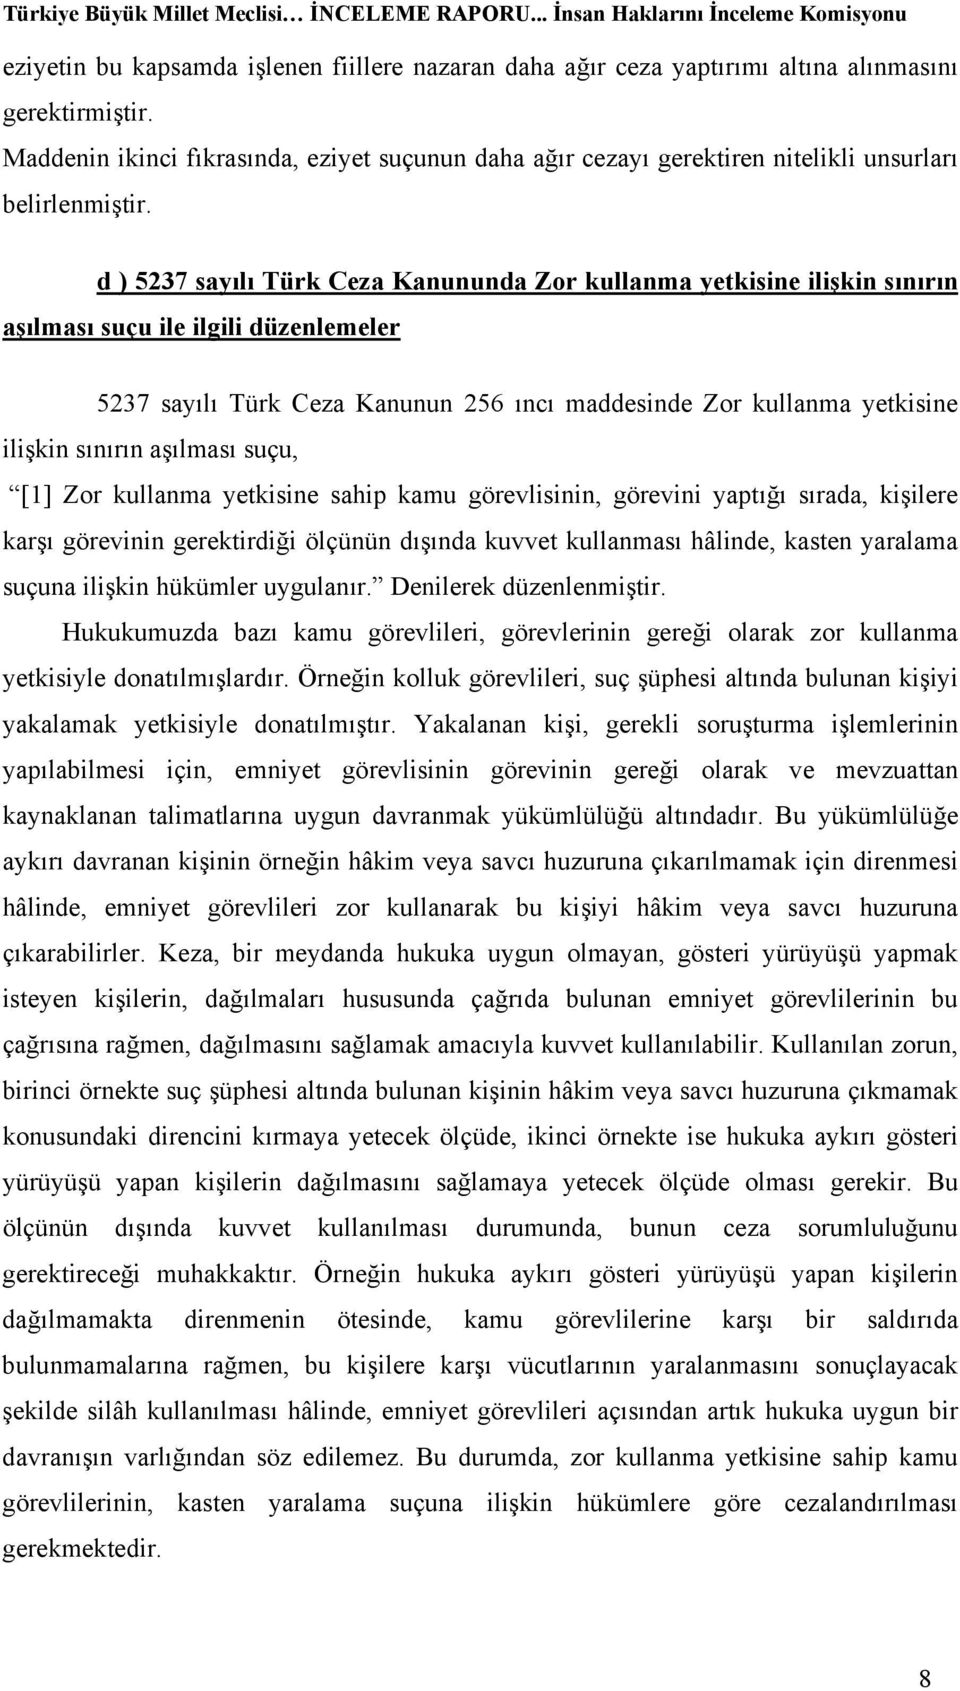 d ) 5237 sayılı Türk Ceza Kanununda Zor kullanma yetkisine ilişkin sınırın aşılması suçu ile ilgili düzenlemeler 5237 sayılı Türk Ceza Kanunun 256 ıncı maddesinde Zor kullanma yetkisine ilişkin